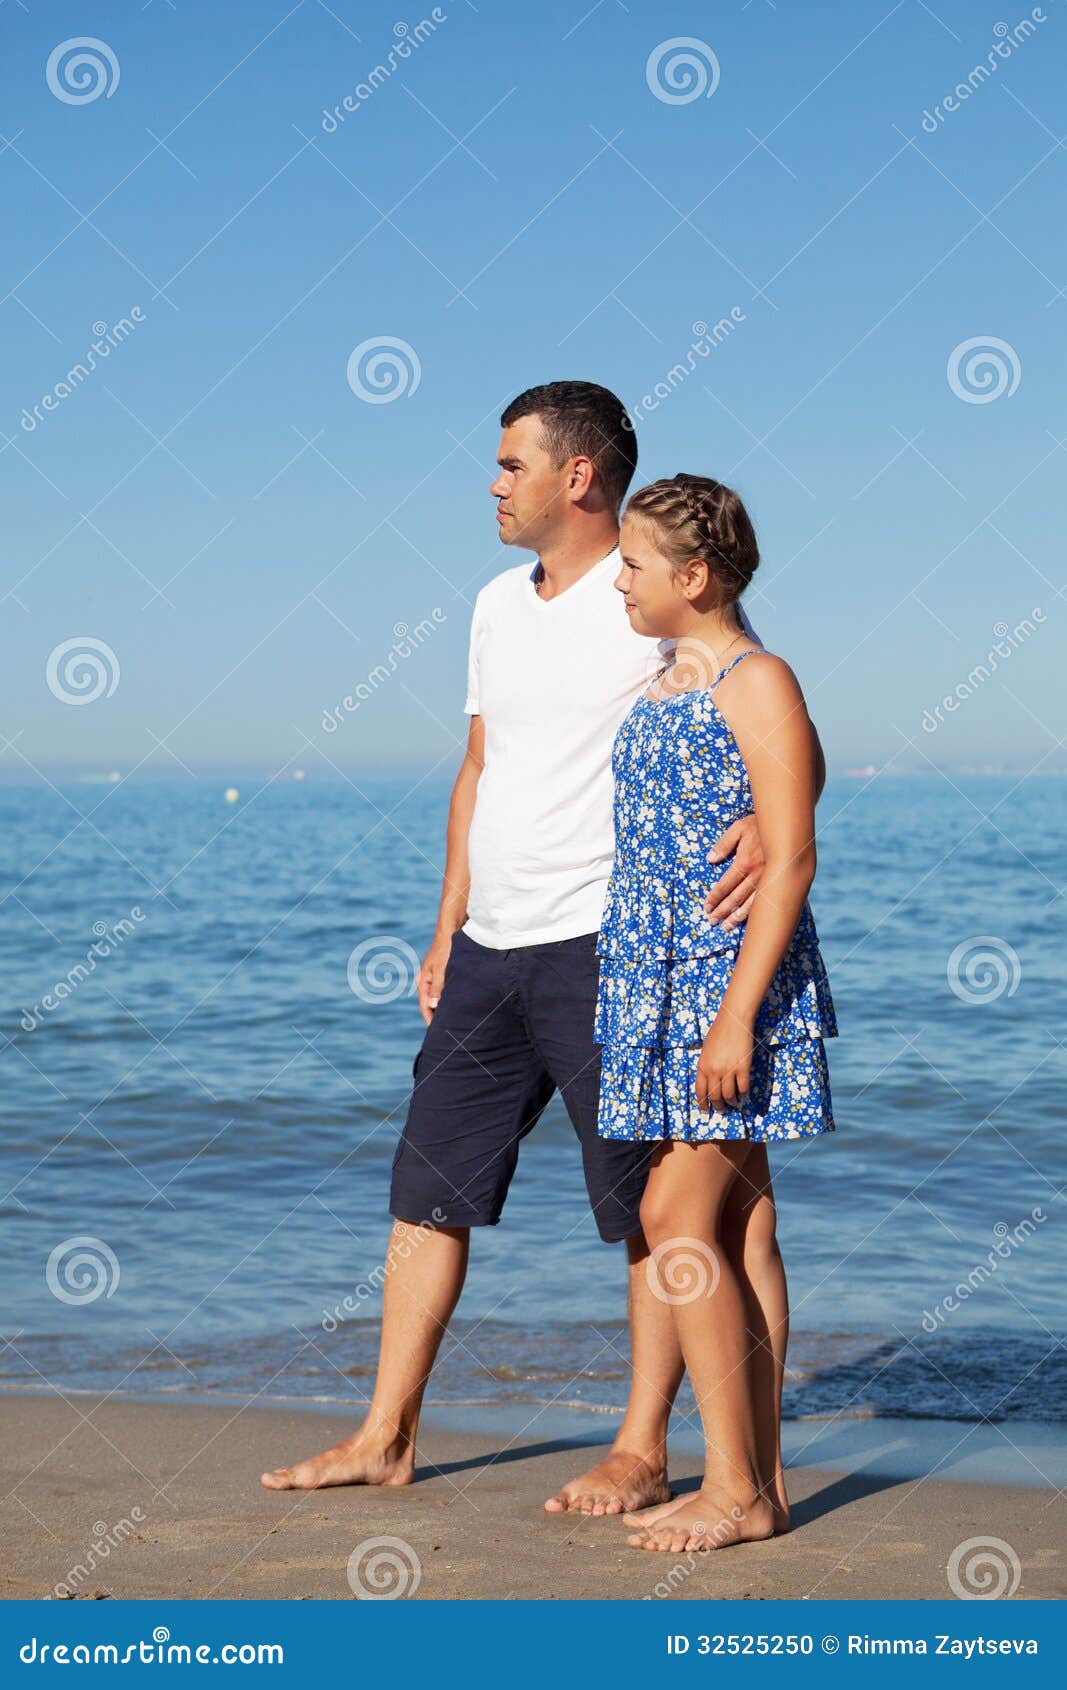 Дочка папа на пляже. Девочка с папой на пляже. Фотосессия папа и дочка на море. Подросток и папа на пляже. Пара с рдочкой на пляже.